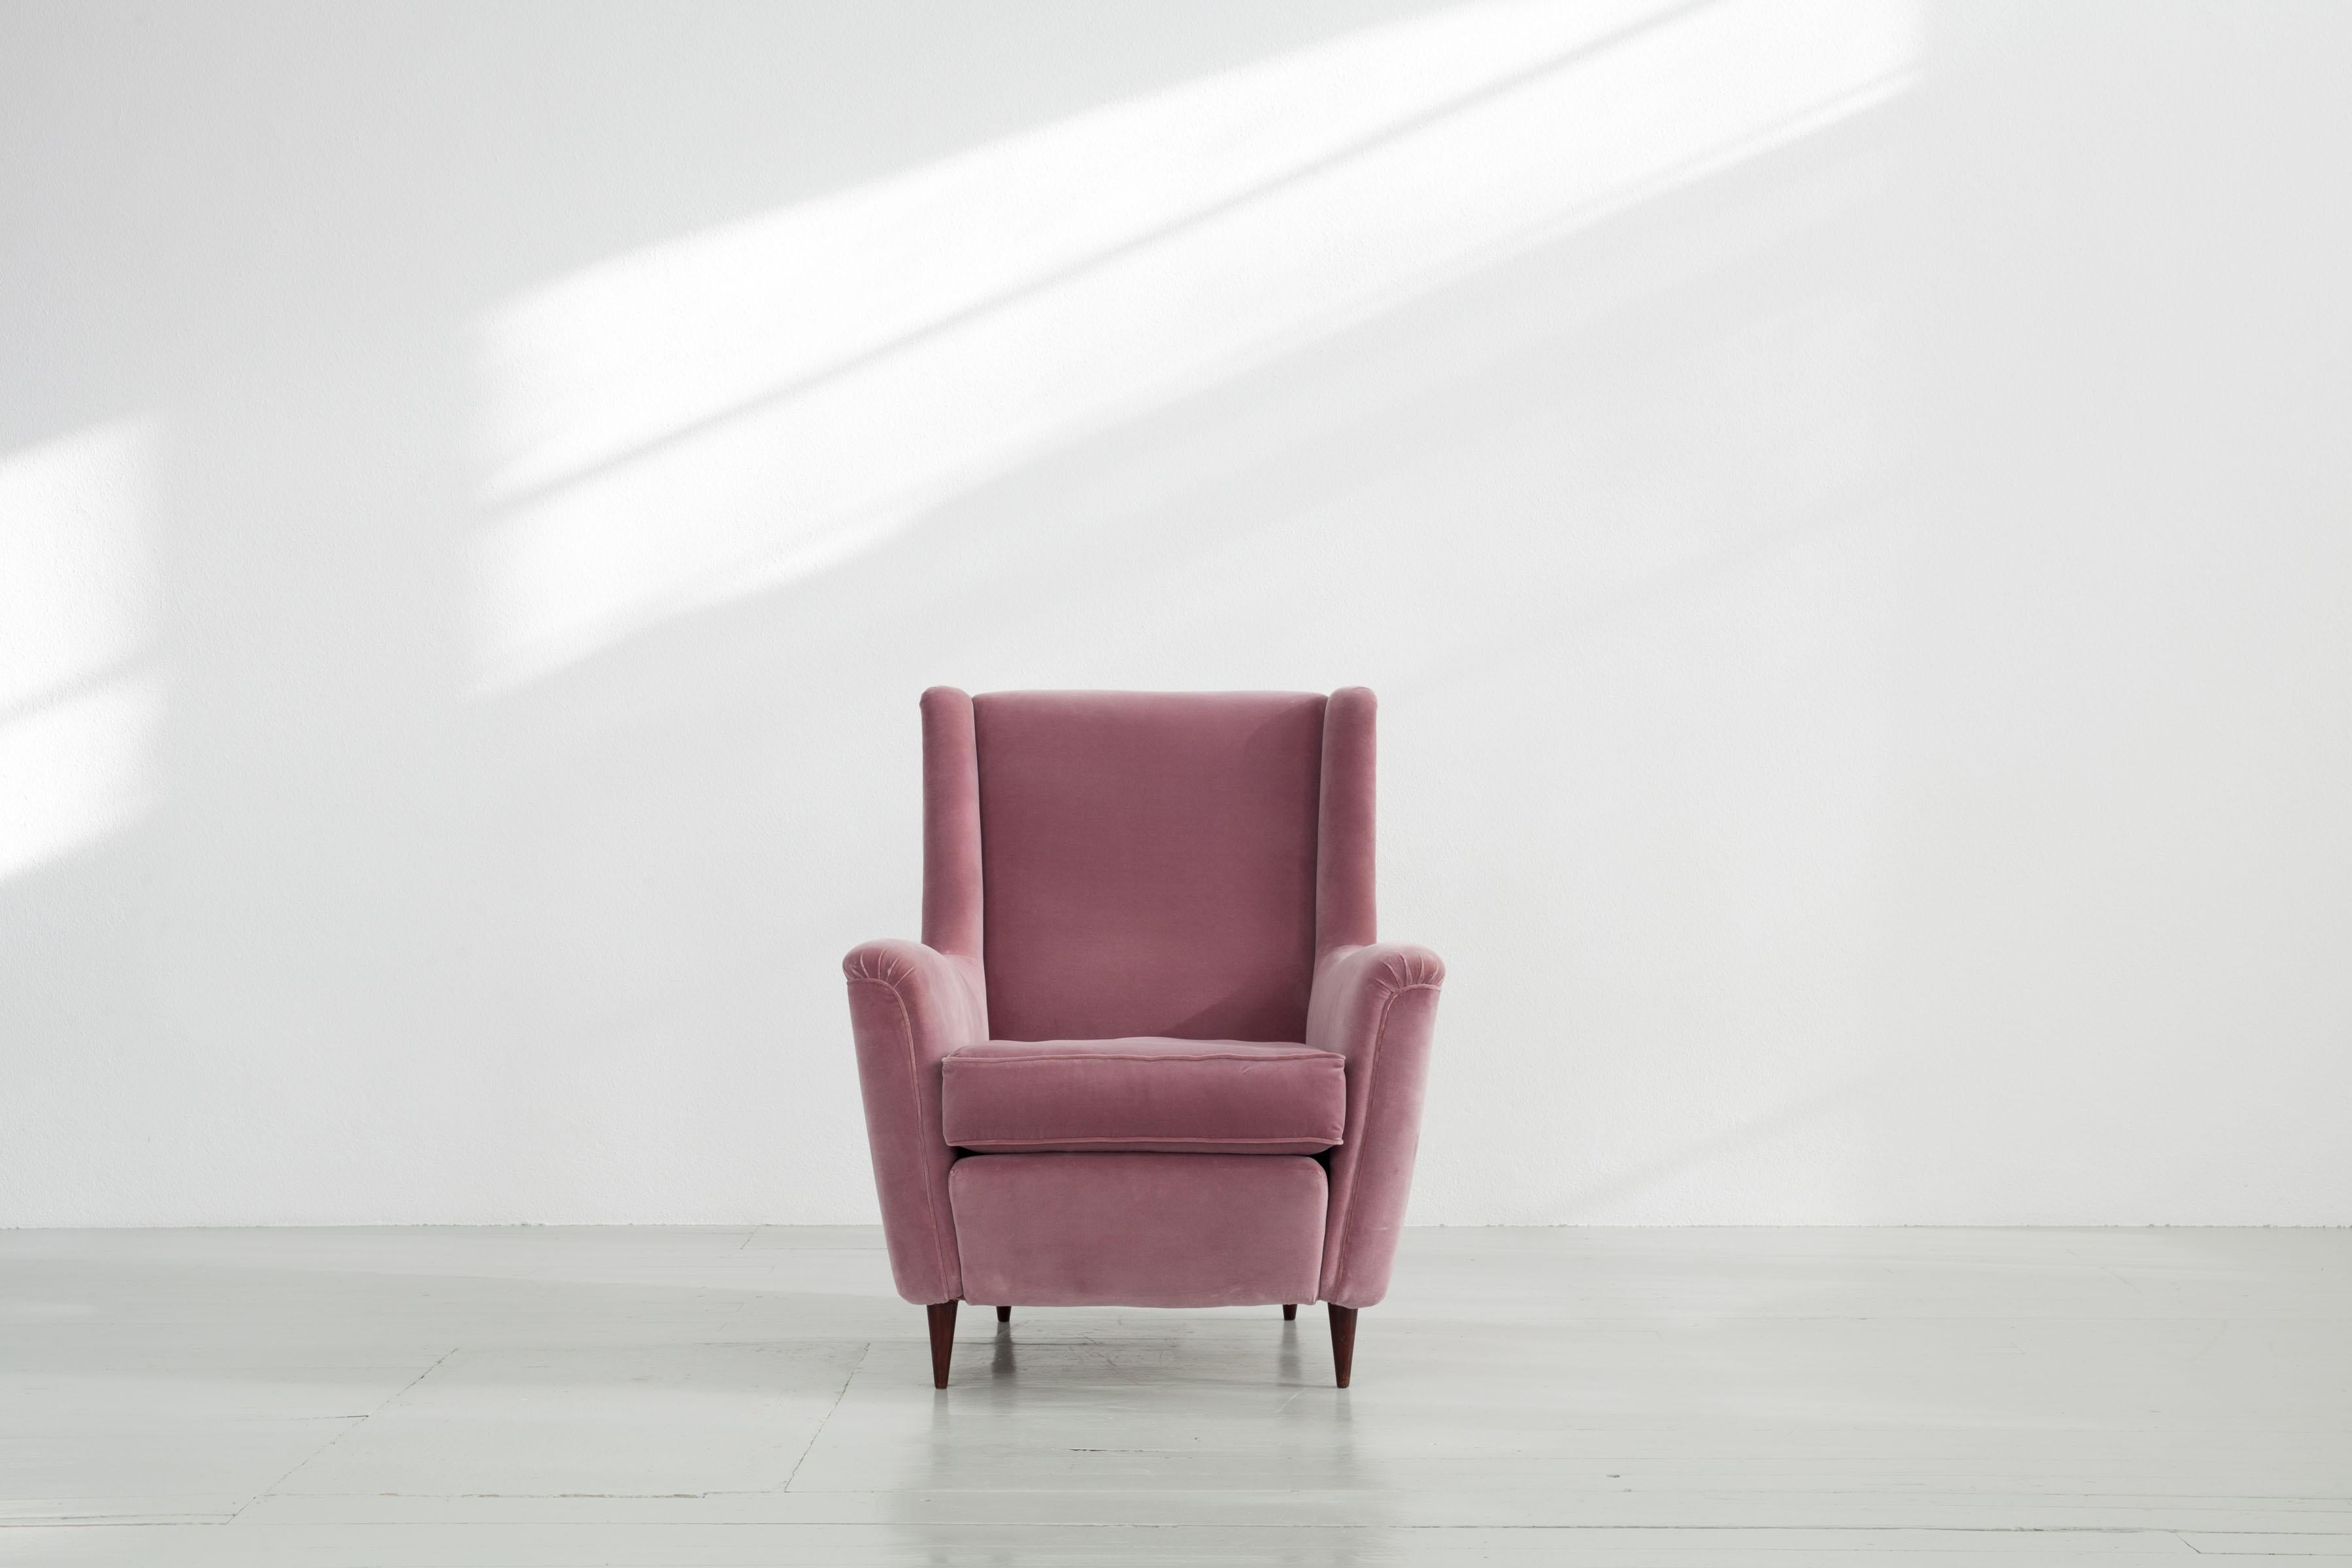 Dieser Sessel wurde 1951 in Italien von Ico Parisi entworfen und von Ariberto Colombo hergestellt. Der massive Stuhl war in ihrer Vergangenheit mit einem hellrosa Bezug neu gepolstert worden. Dieser hat einige leichte Schäden, die Sie auf den